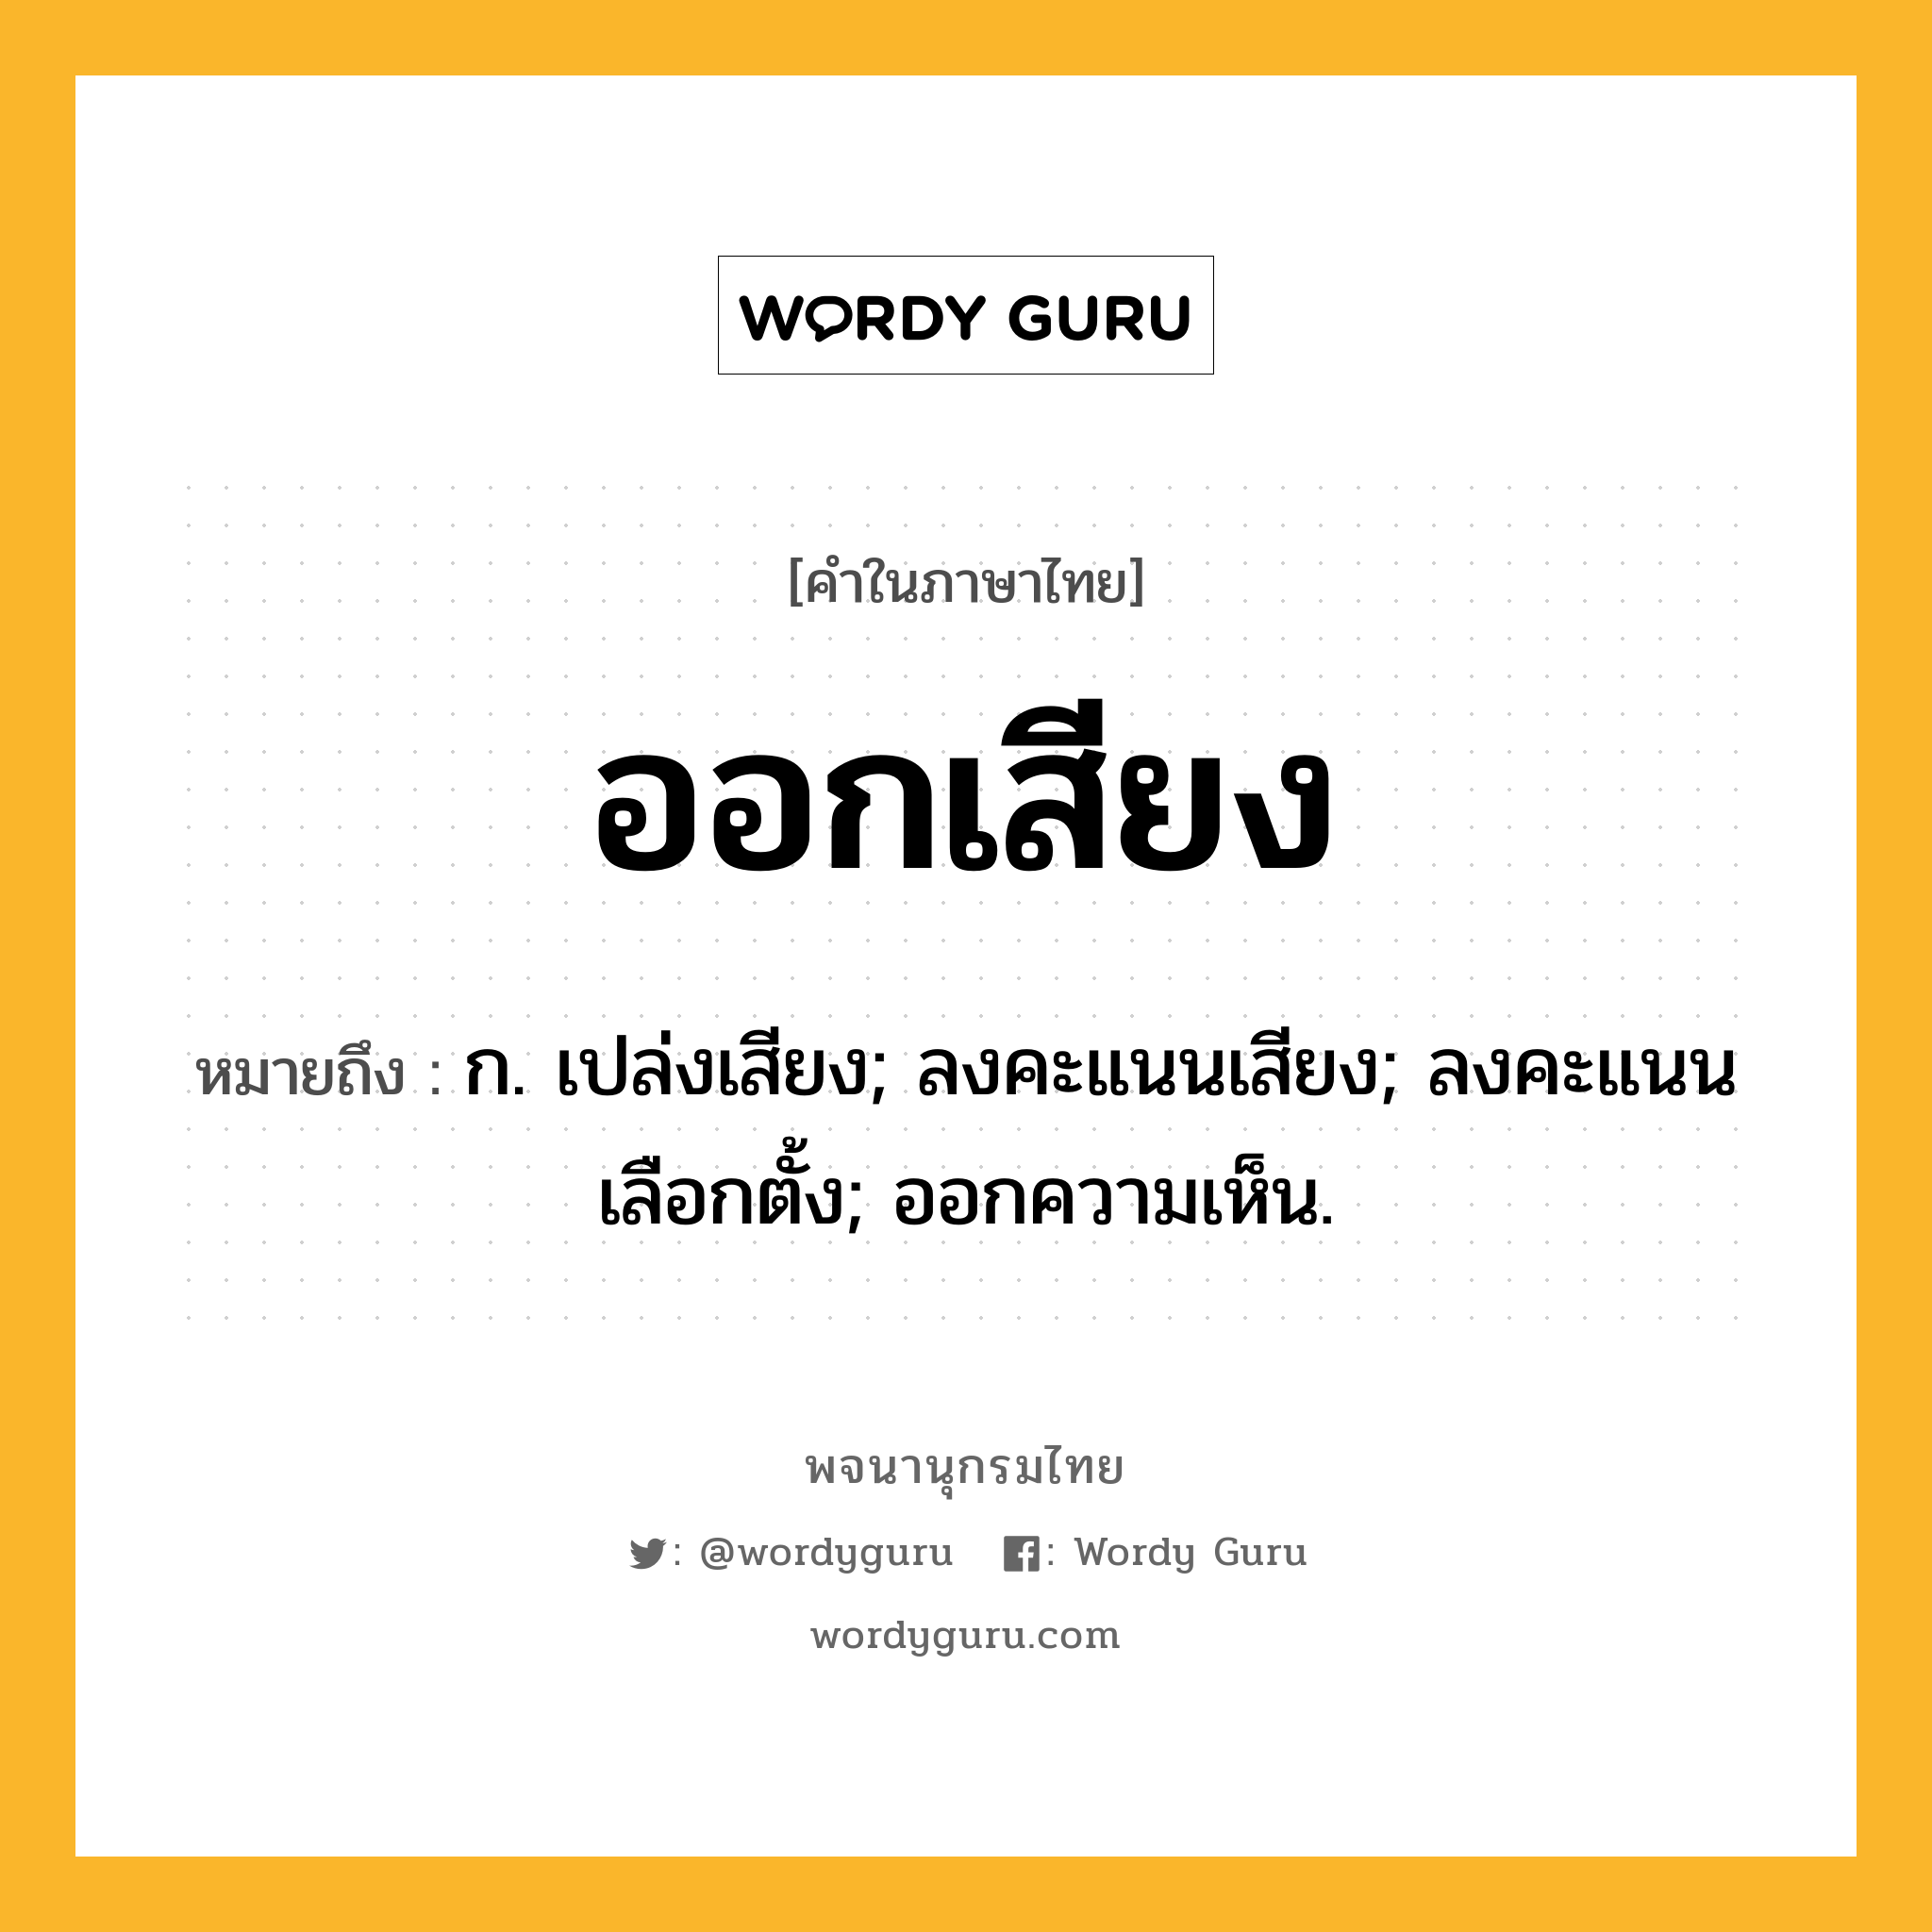 ออกเสียง ความหมาย หมายถึงอะไร?, คำในภาษาไทย ออกเสียง หมายถึง ก. เปล่งเสียง; ลงคะแนนเสียง; ลงคะแนนเลือกตั้ง; ออกความเห็น.